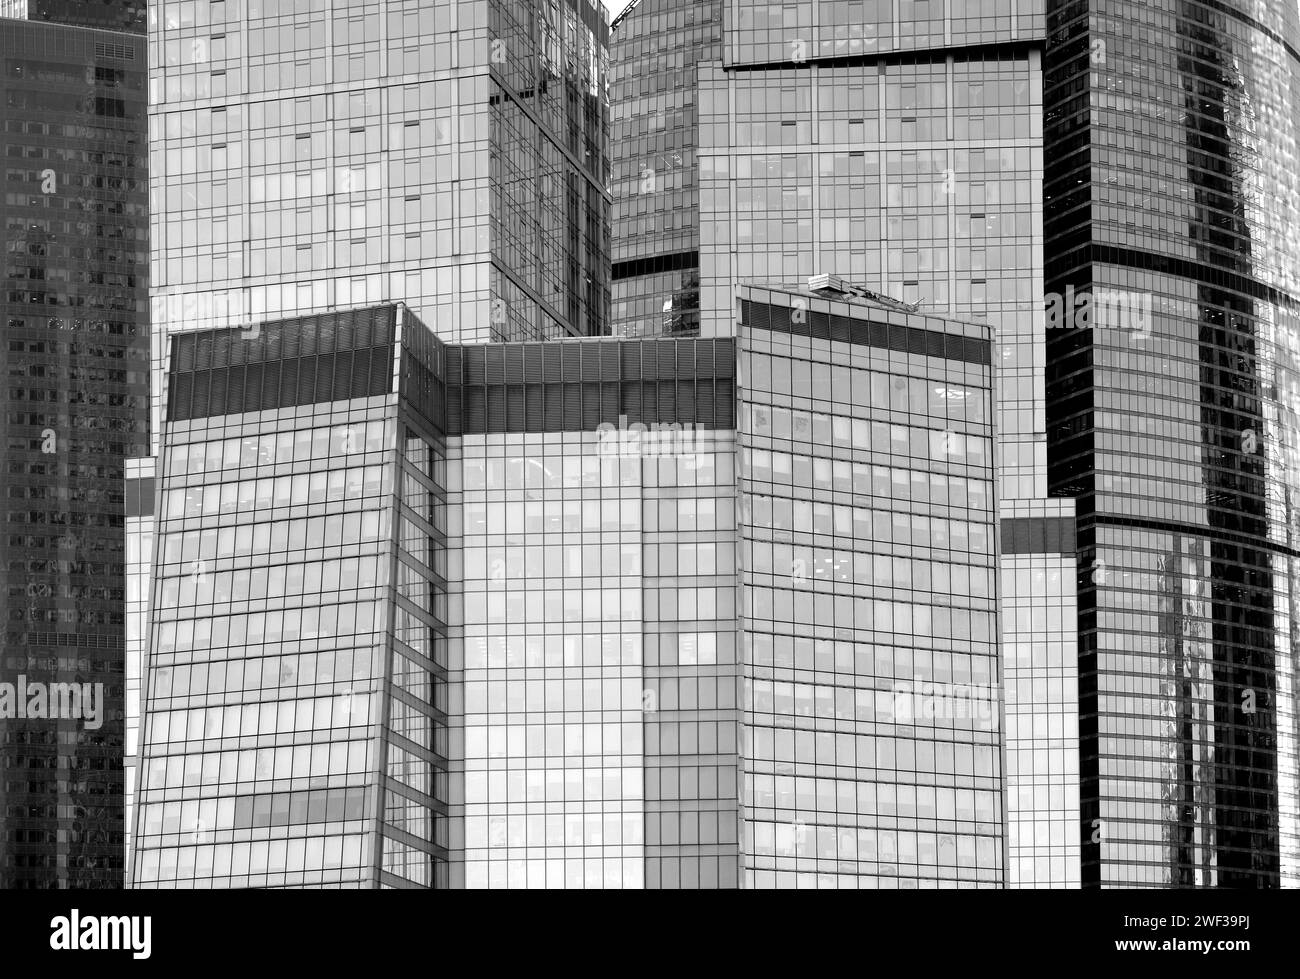 Gli alti e fitti edifici della zona commerciale in stile retrò offrono una vista ravvicinata della foto in bianco e nero Foto Stock